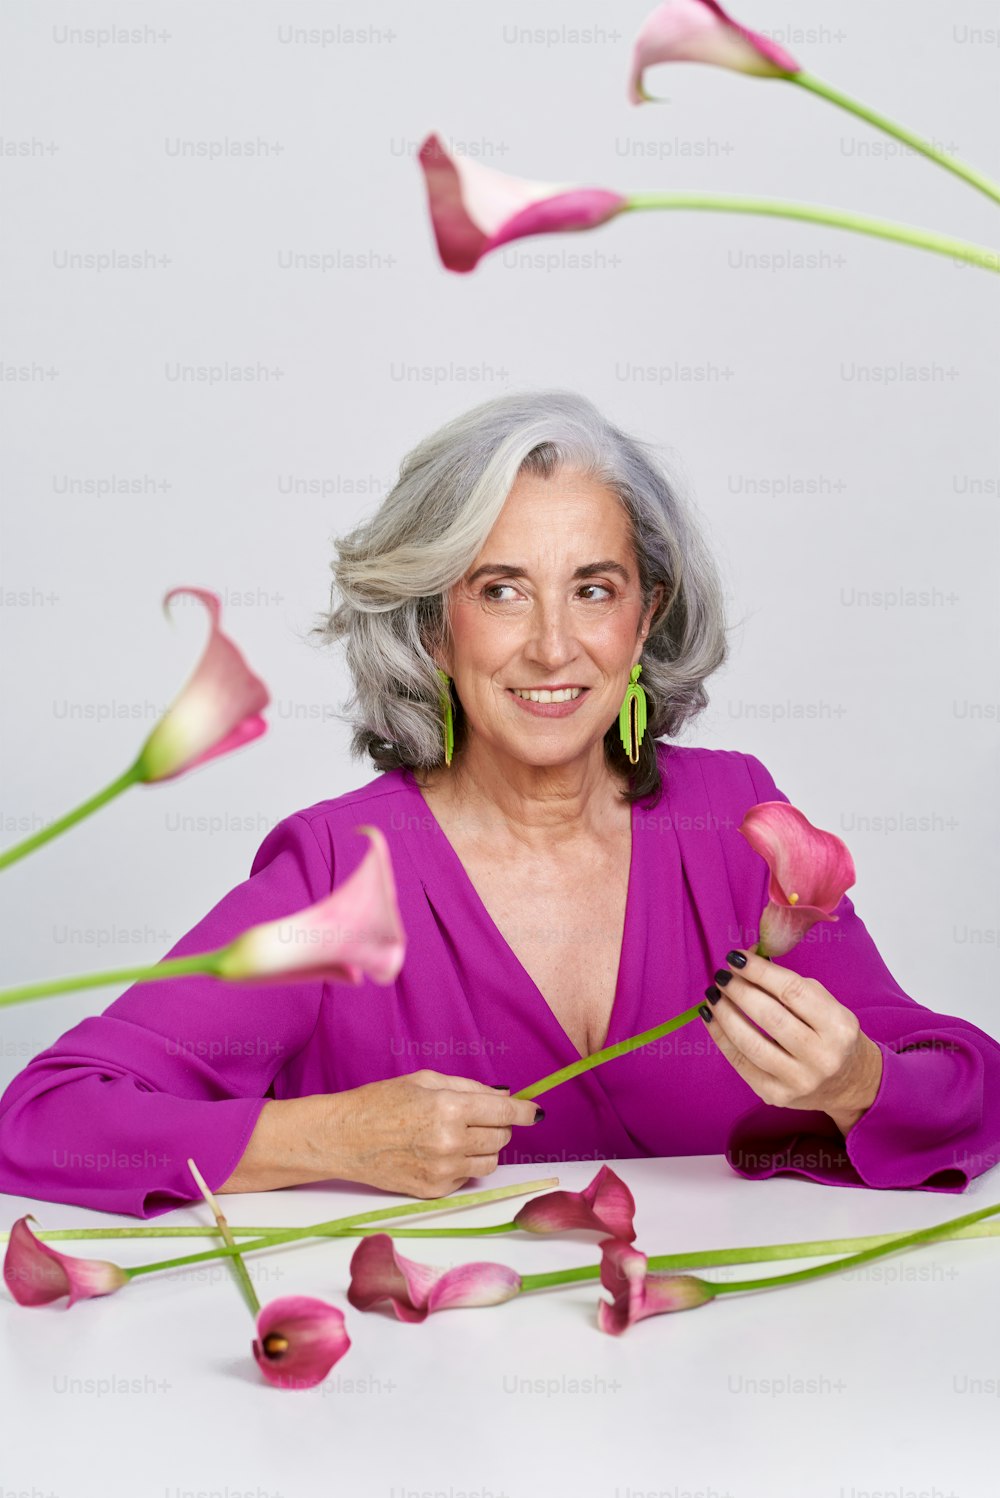 Una donna anziana in un vestito viola che tiene un fiore